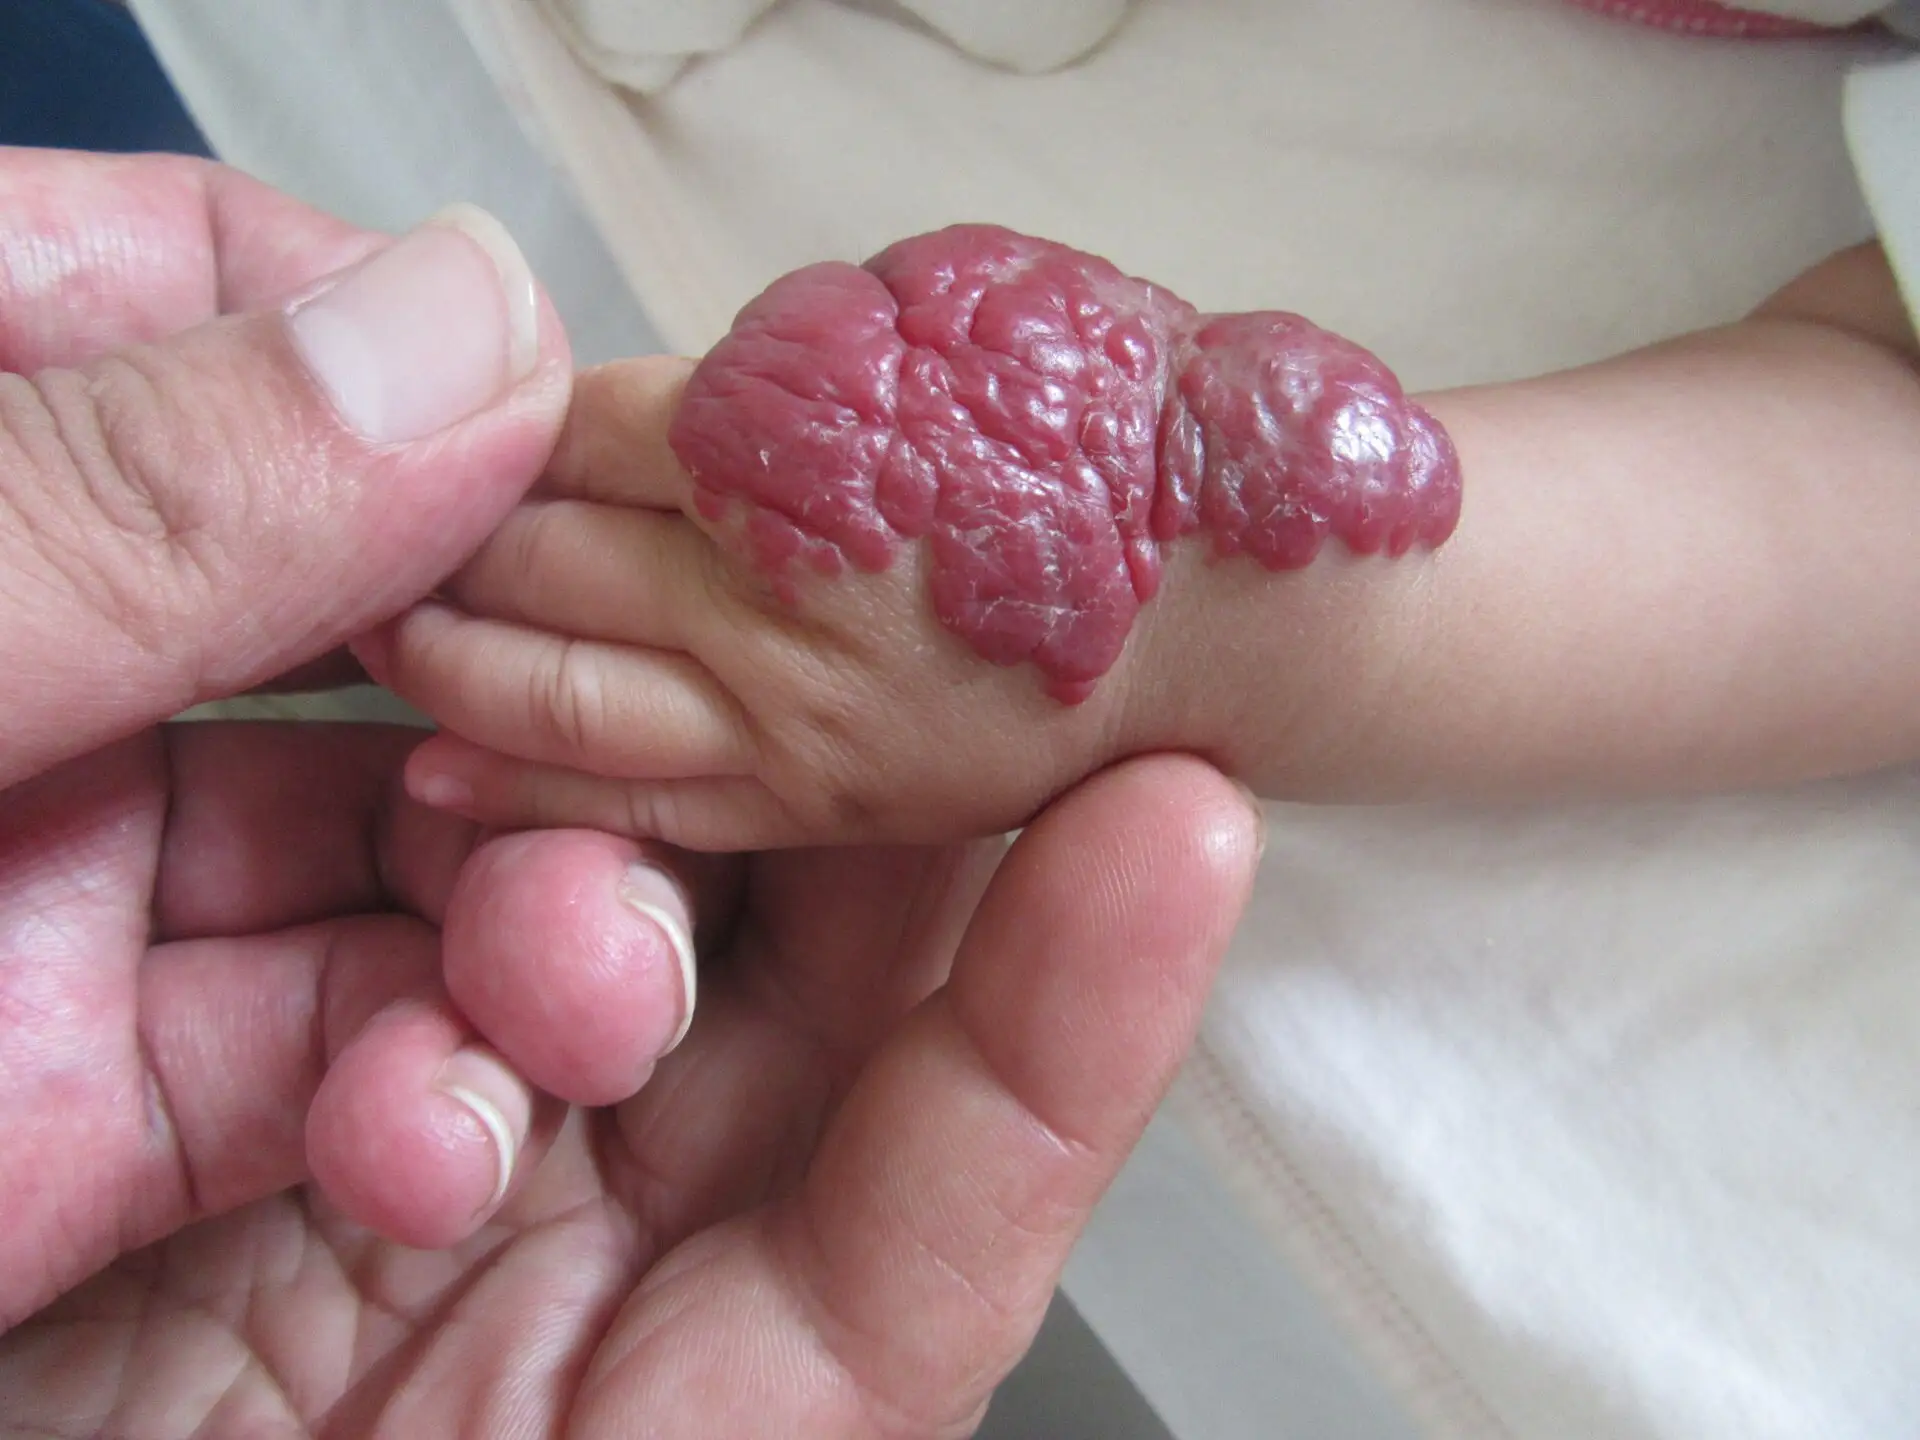 孩子脸上结出草莓,医生说是血管瘤,对孩子危害大吗?